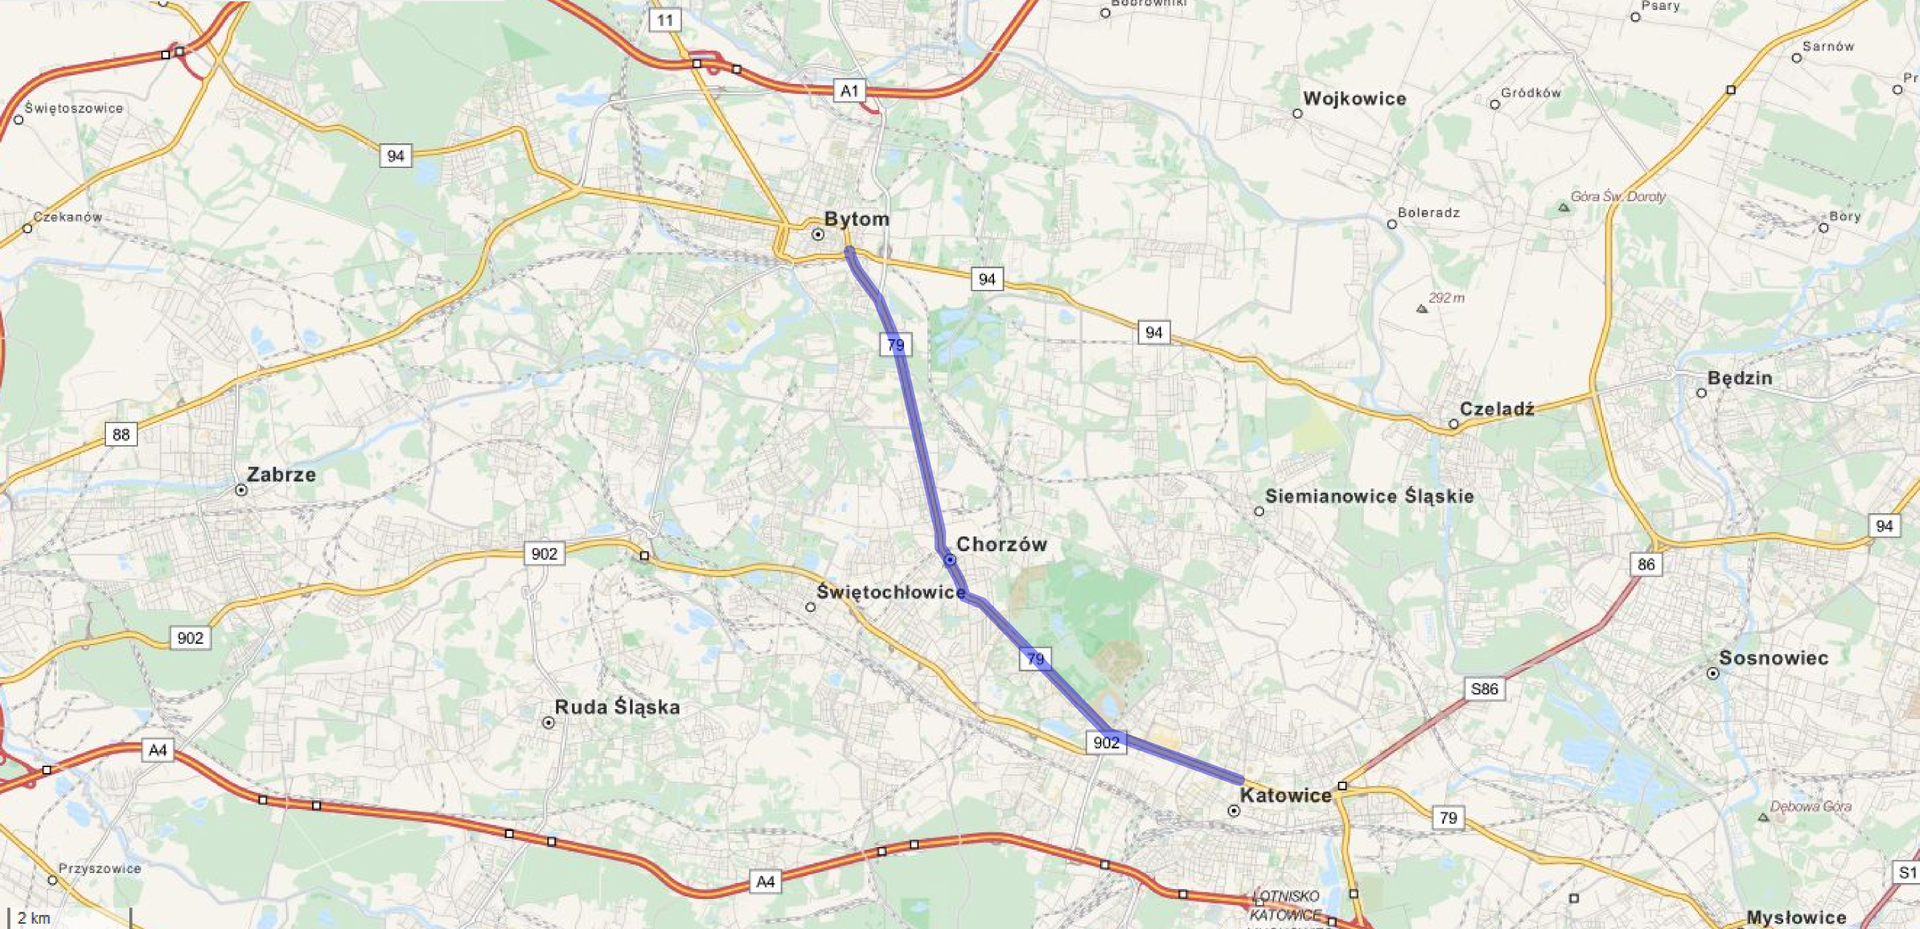 Ilustracja przedstawia fragment mapy Górnego Śląska. Na mapie zaznaczono niebieskim kolorem drogę łączącą Bytom z Katowicami.